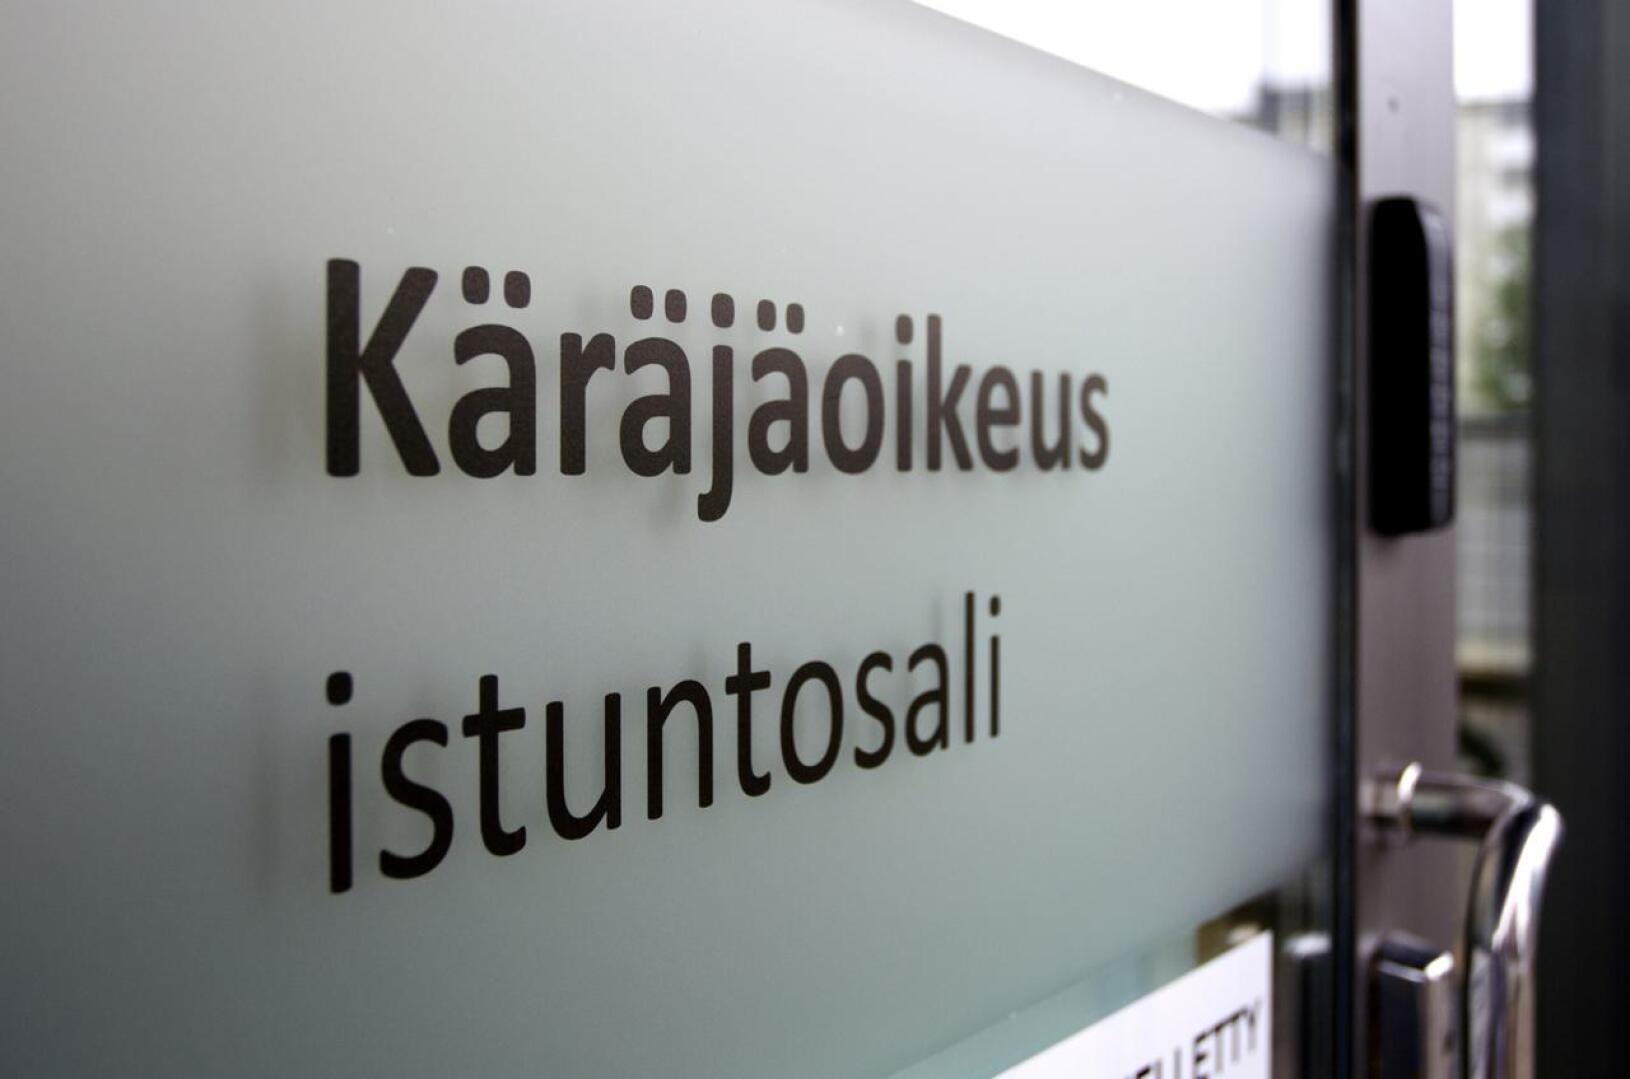 Oulun käräjäoikeus antoi päätöksensä viime viikon perjantaina.